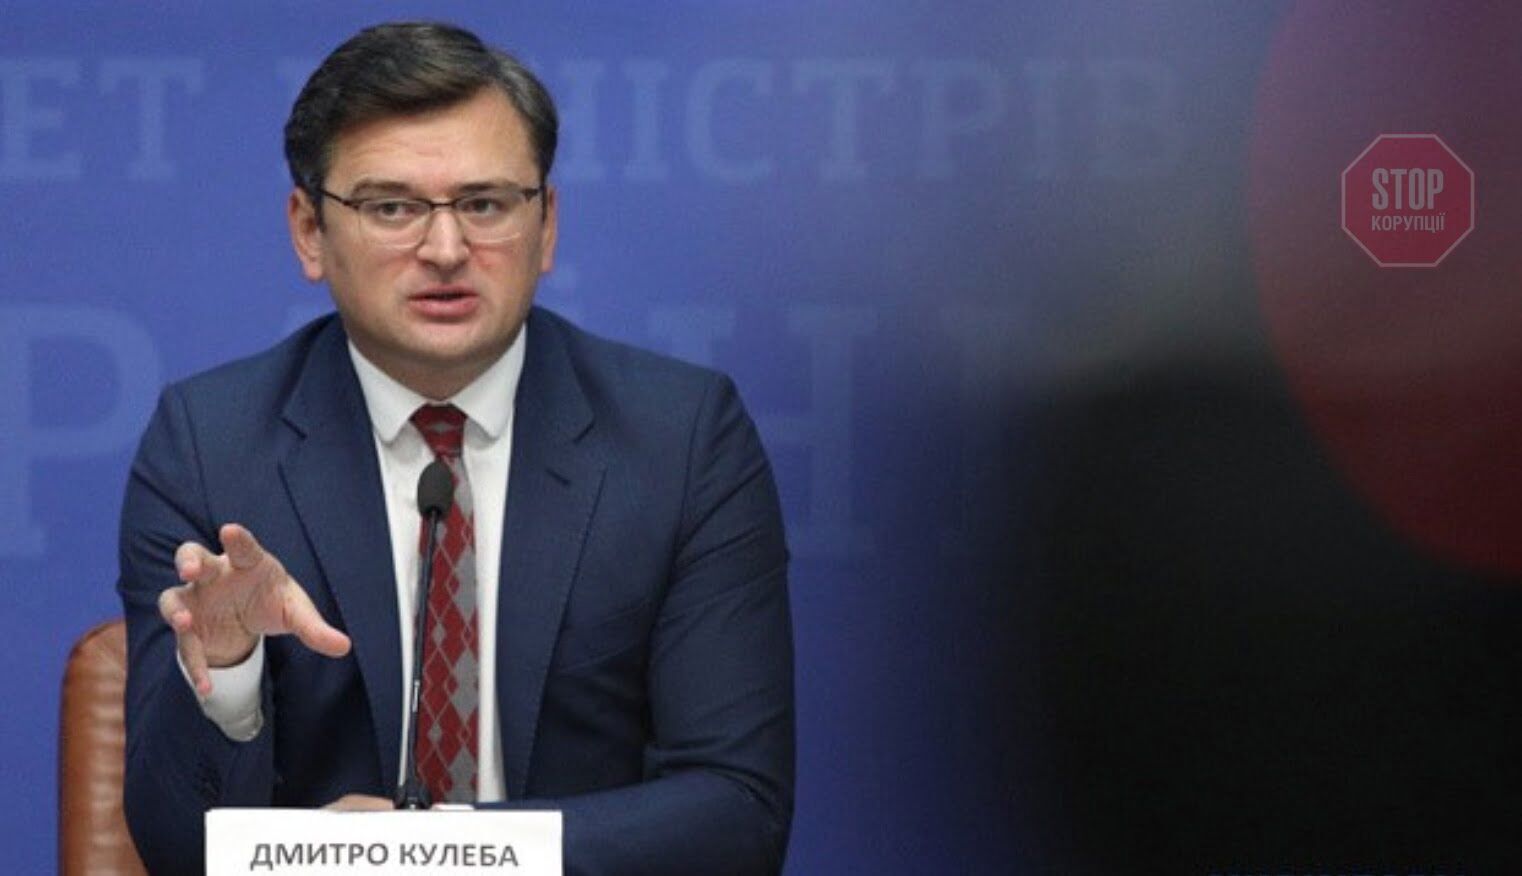  Дмитро Кулеба заявив, що міжнародні партнери готові вживати заходів щодо стримання агресії проти України Фото: МЗС